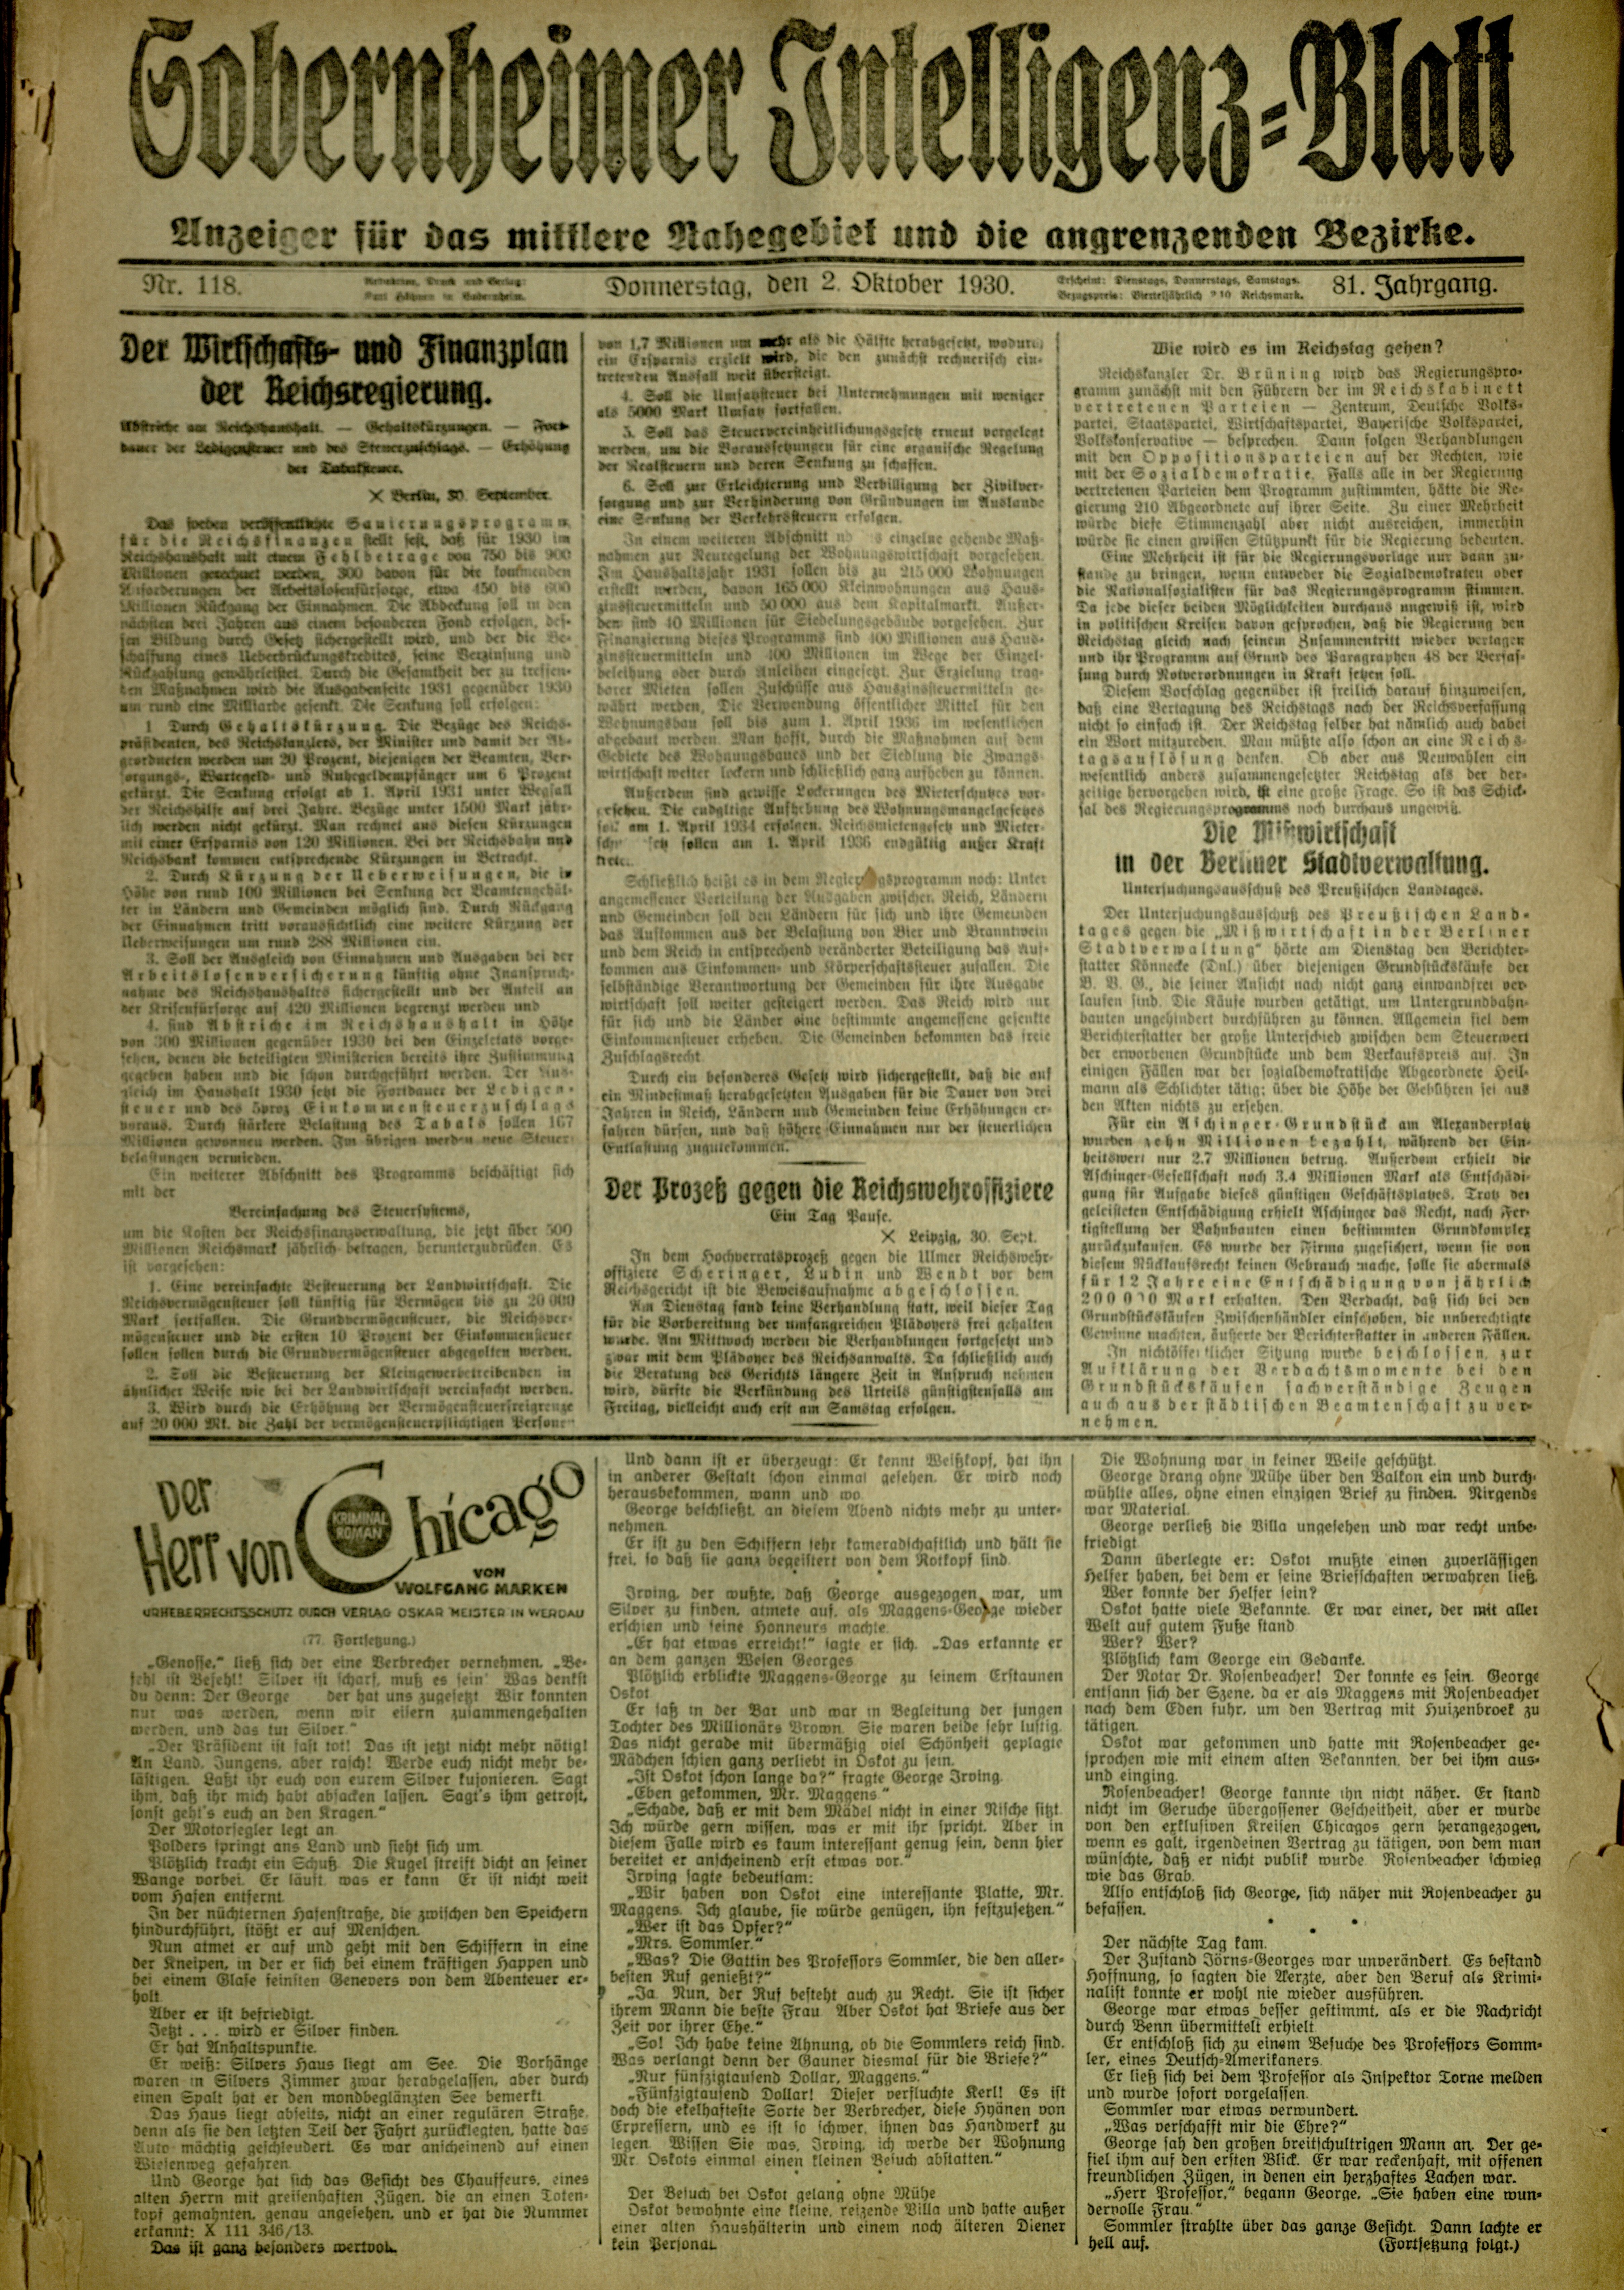 Zeitung: Sobernheimer Intelligenzblatt; Oktober 1930, Jg. 81 Nr. 118 (Heimatmuseum Bad Sobernheim CC BY-NC-SA)